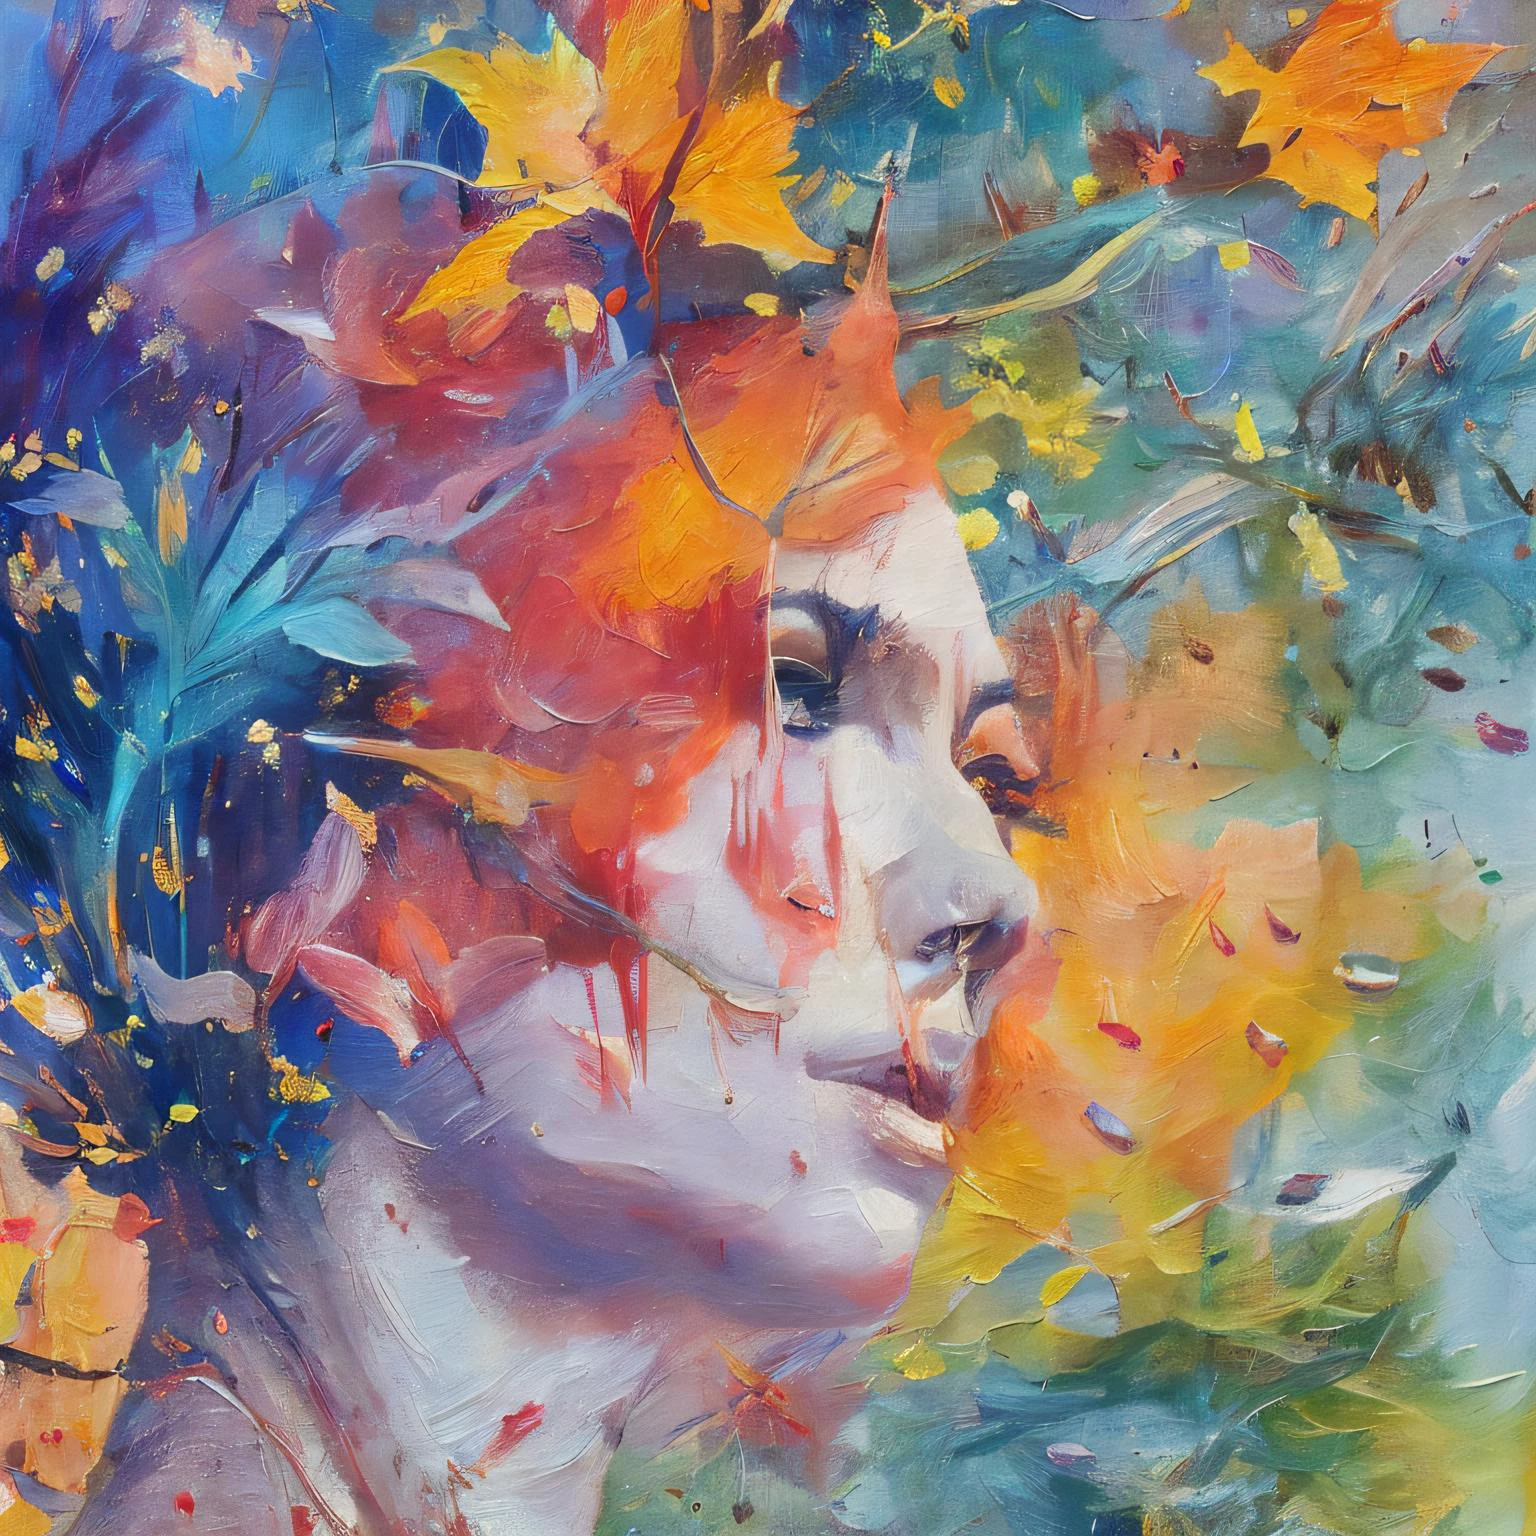 mse 的一幅畫 agnes cecile 的《女人》, 發光設計, 柔和的色彩, 墨水滴, 秋天的燈光